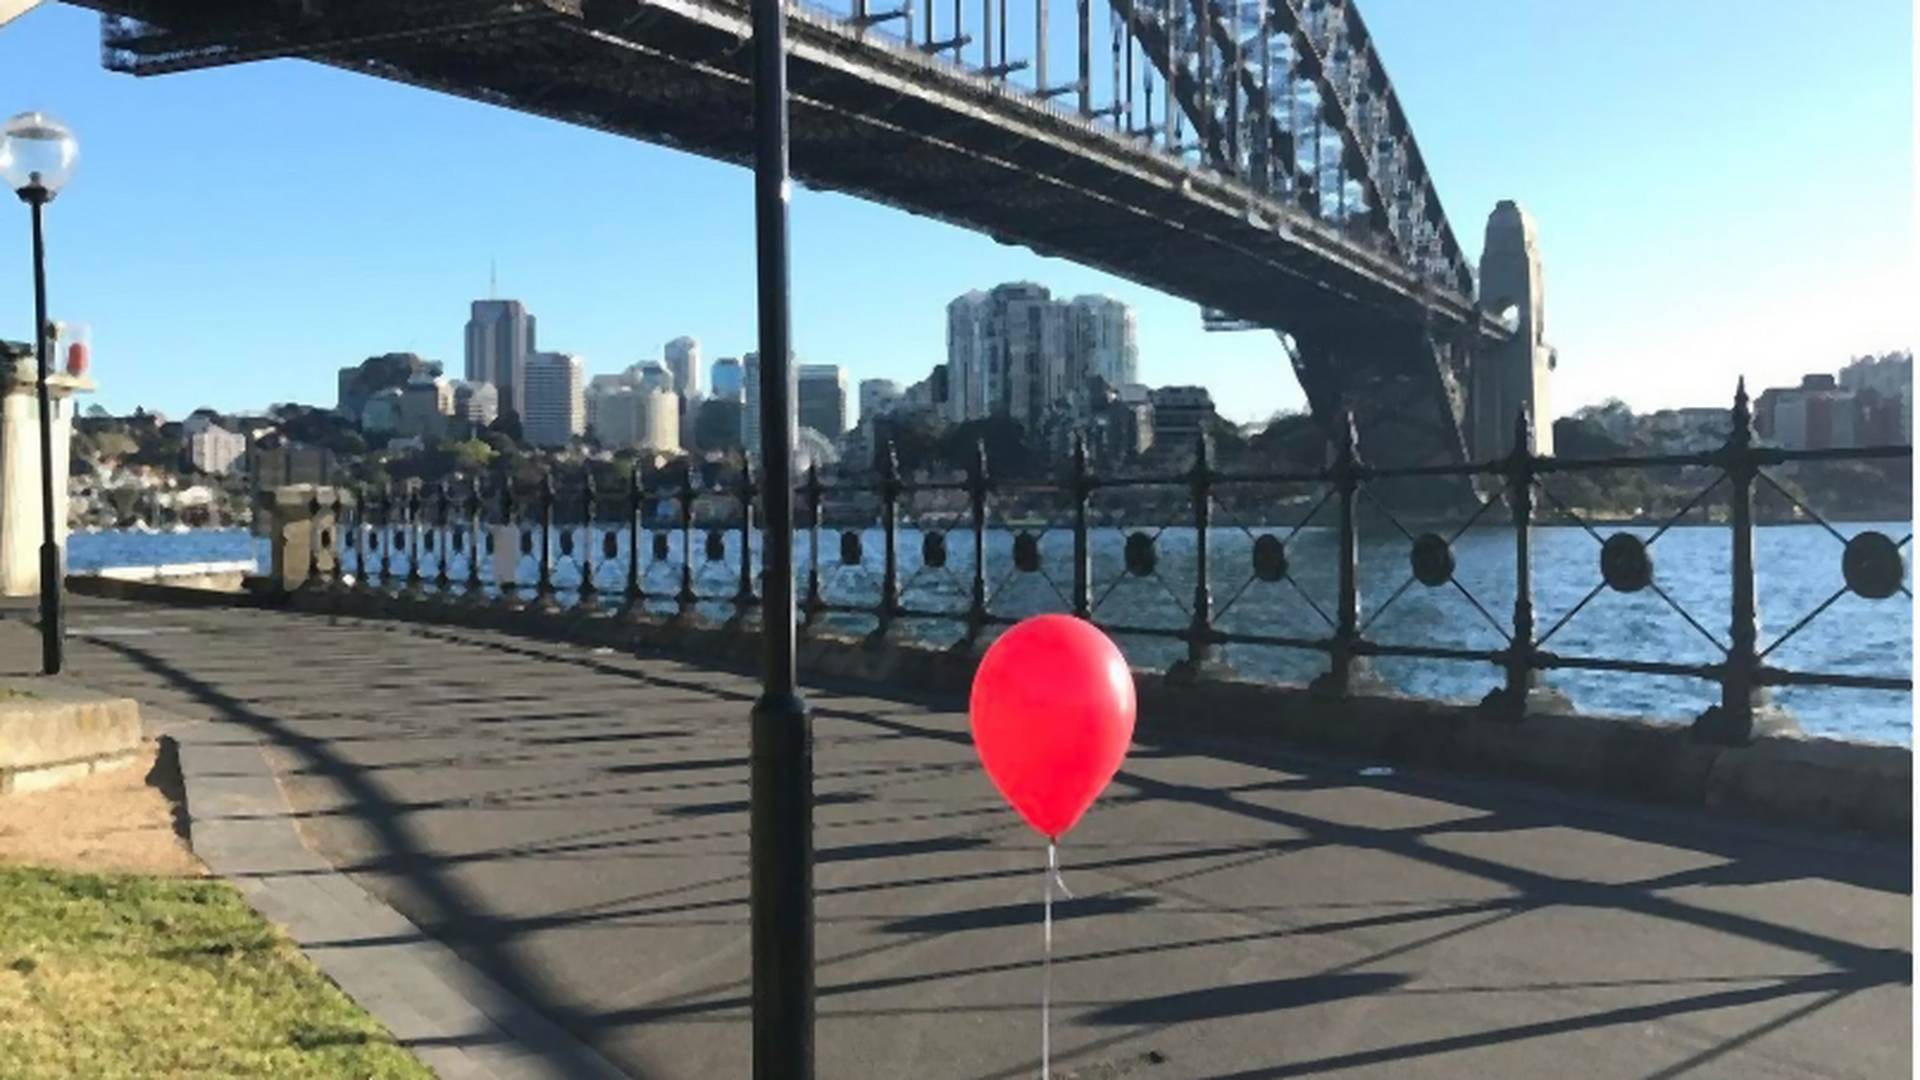 Crveni baloni na ulicama širom sveta najavljuju film "IT"